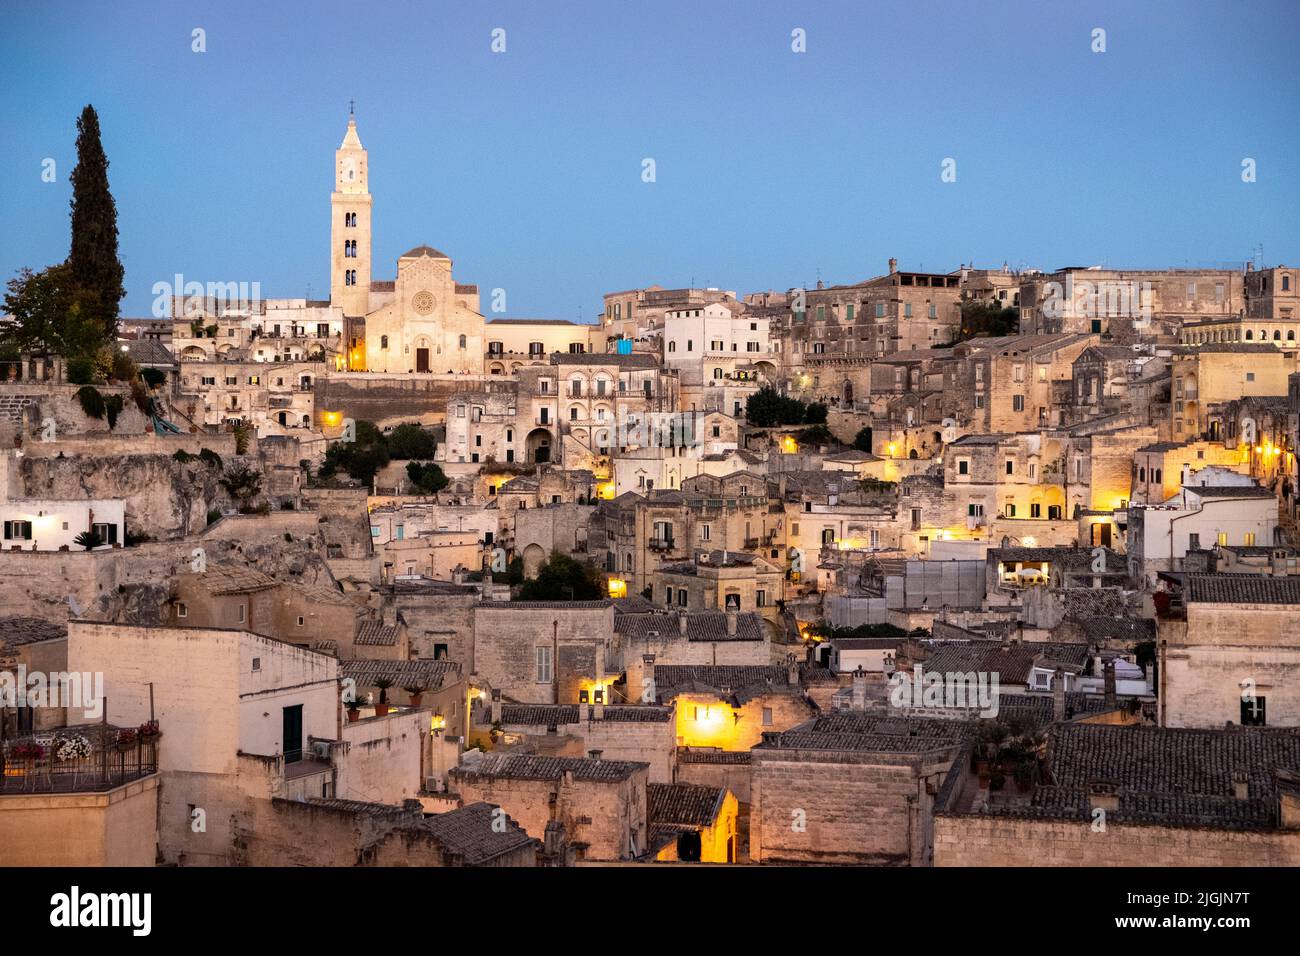 Convicinio di Saint'Antonio on top of hill with Sassi and homes, Matera,Basilicata, Italy Stock Photo